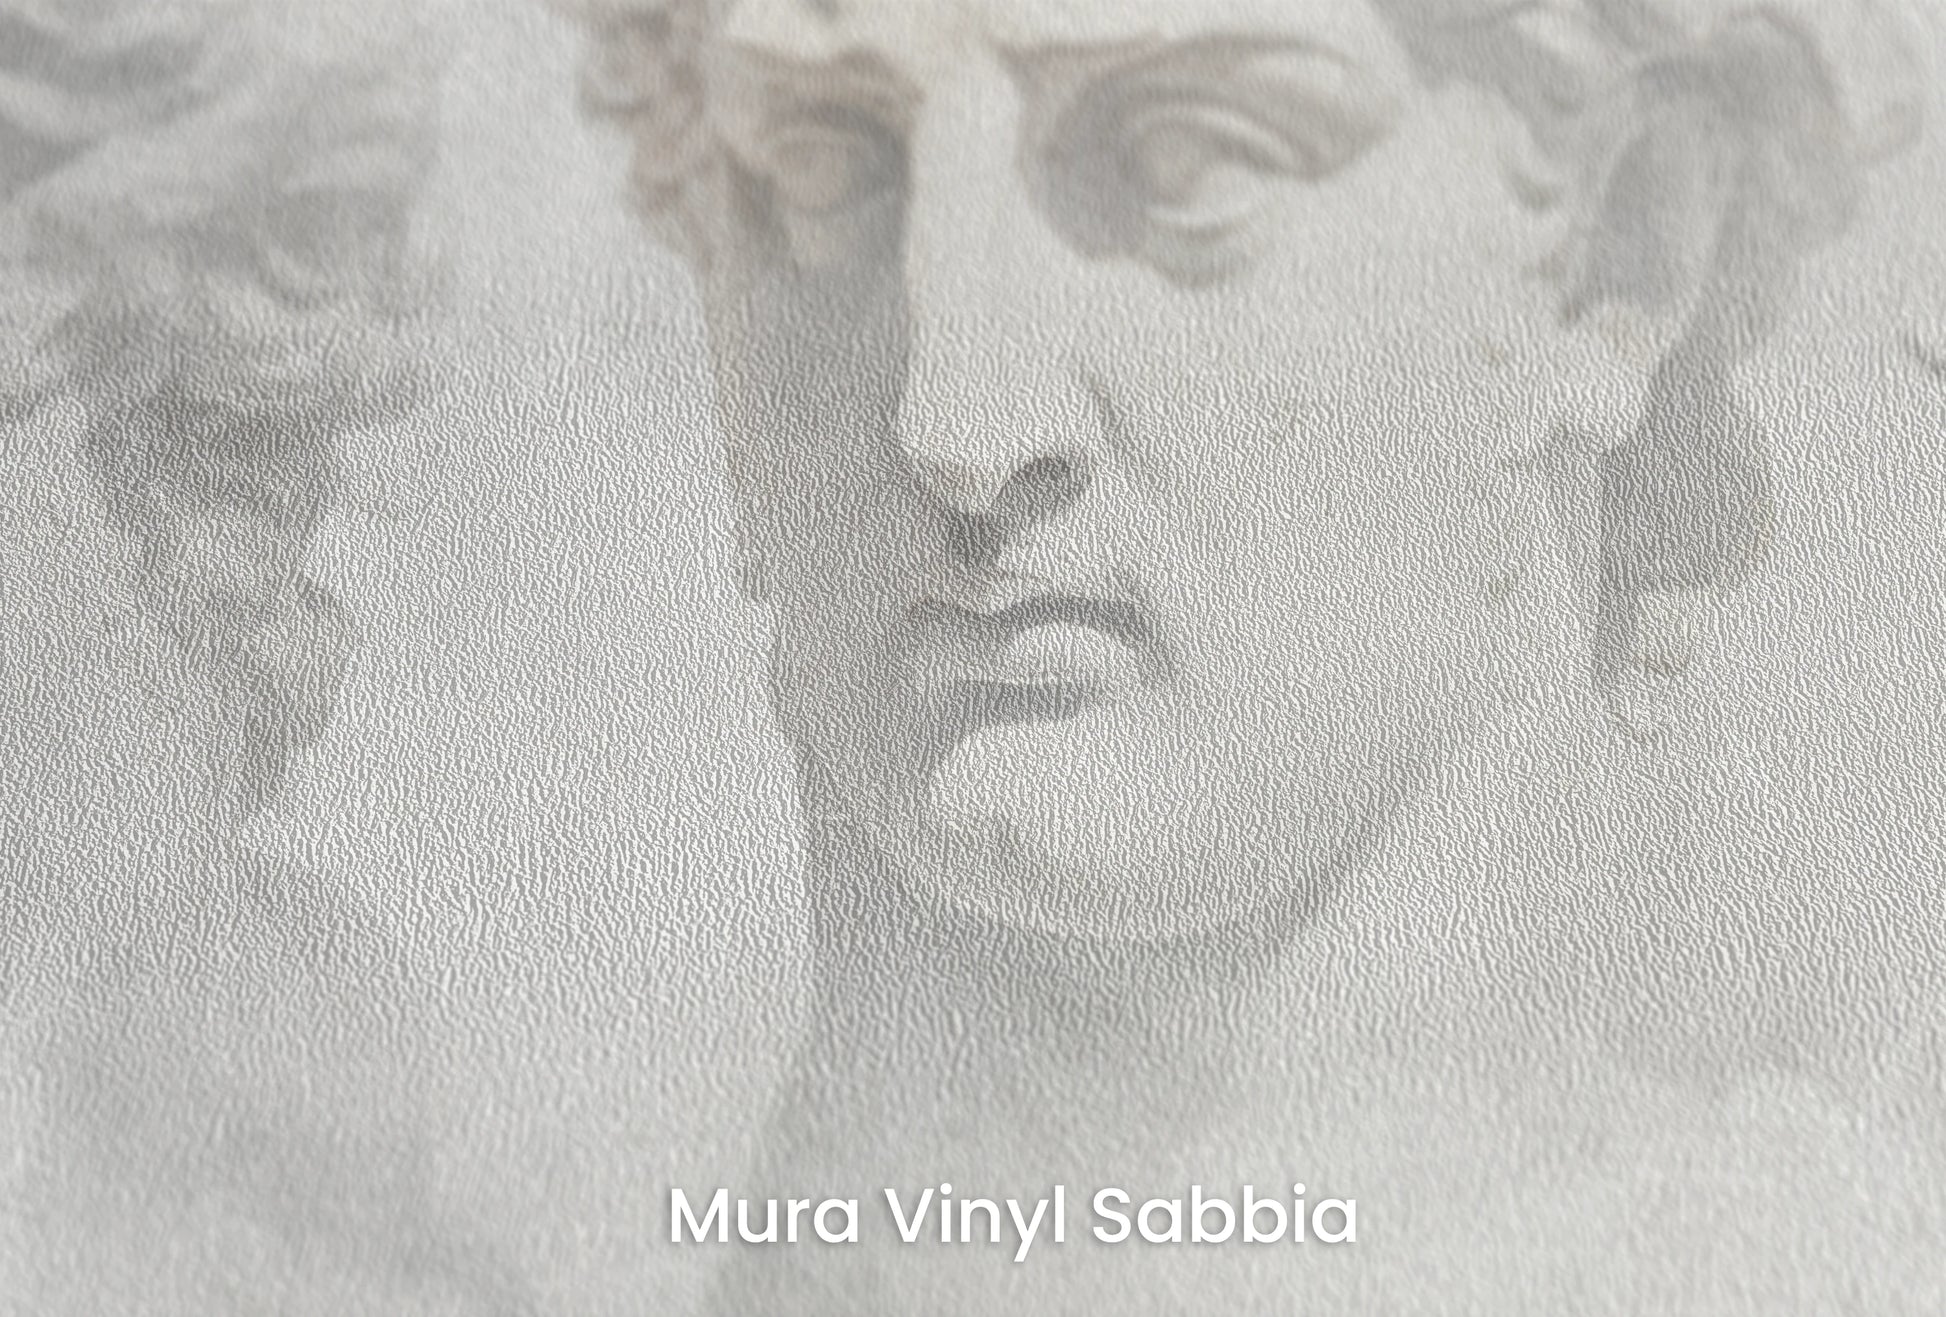 Zbliżenie na artystyczną fototapetę o nazwie Sorrow of Niobe na podłożu Mura Vinyl Sabbia struktura grubego ziarna piasku.